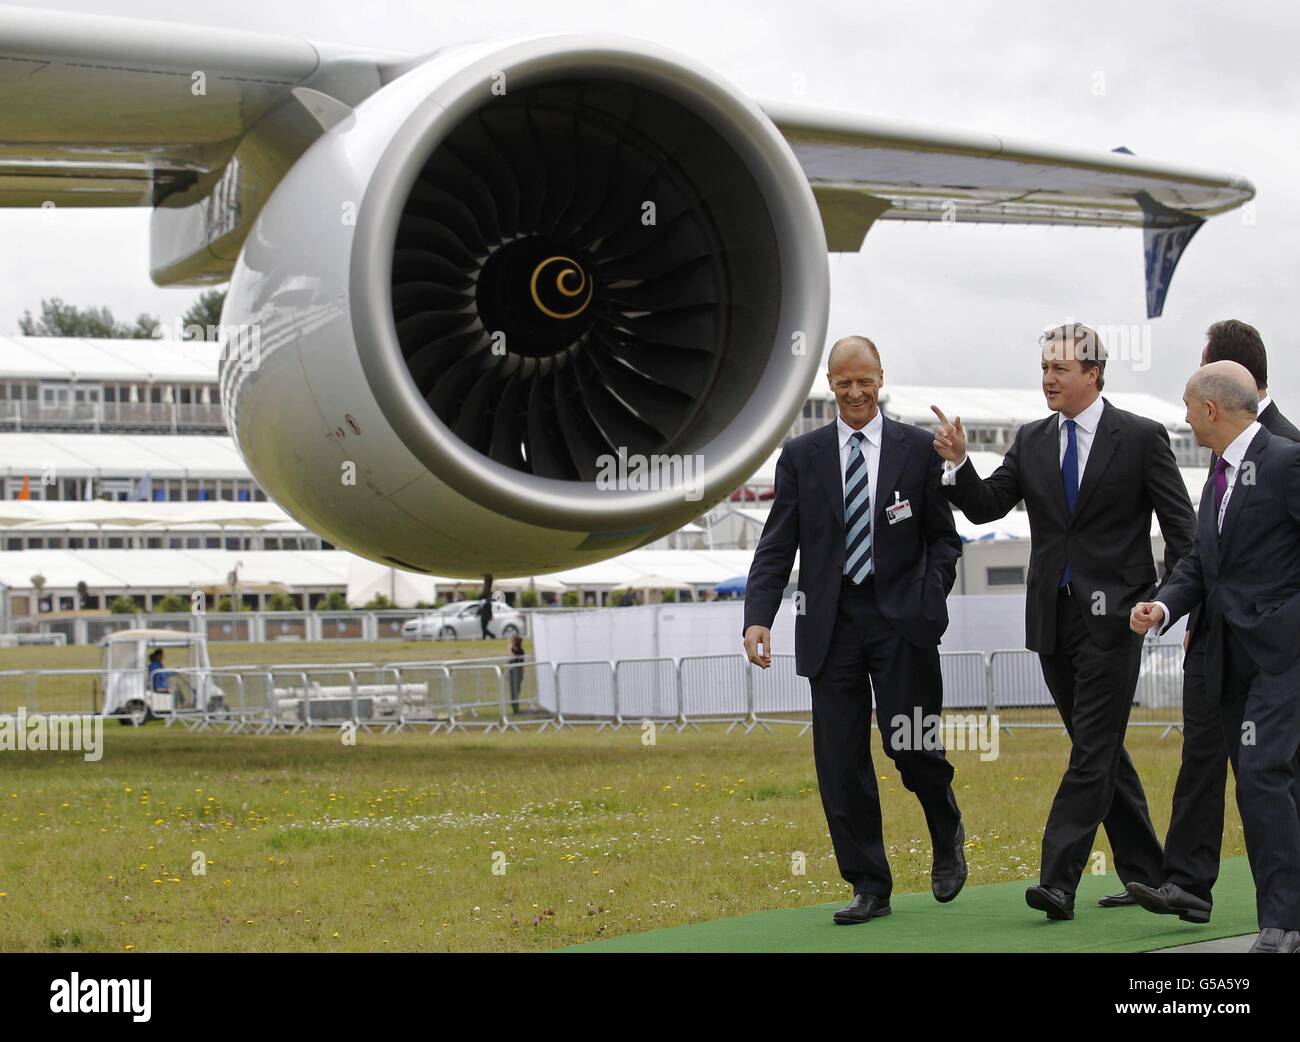 Le Premier ministre David Cameron (au centre) est présenté à l’Airbus A380 par Tom Enders, Directeur général d’EADS (à gauche), lors du salon aéronautique de Farnborough 2012. Banque D'Images